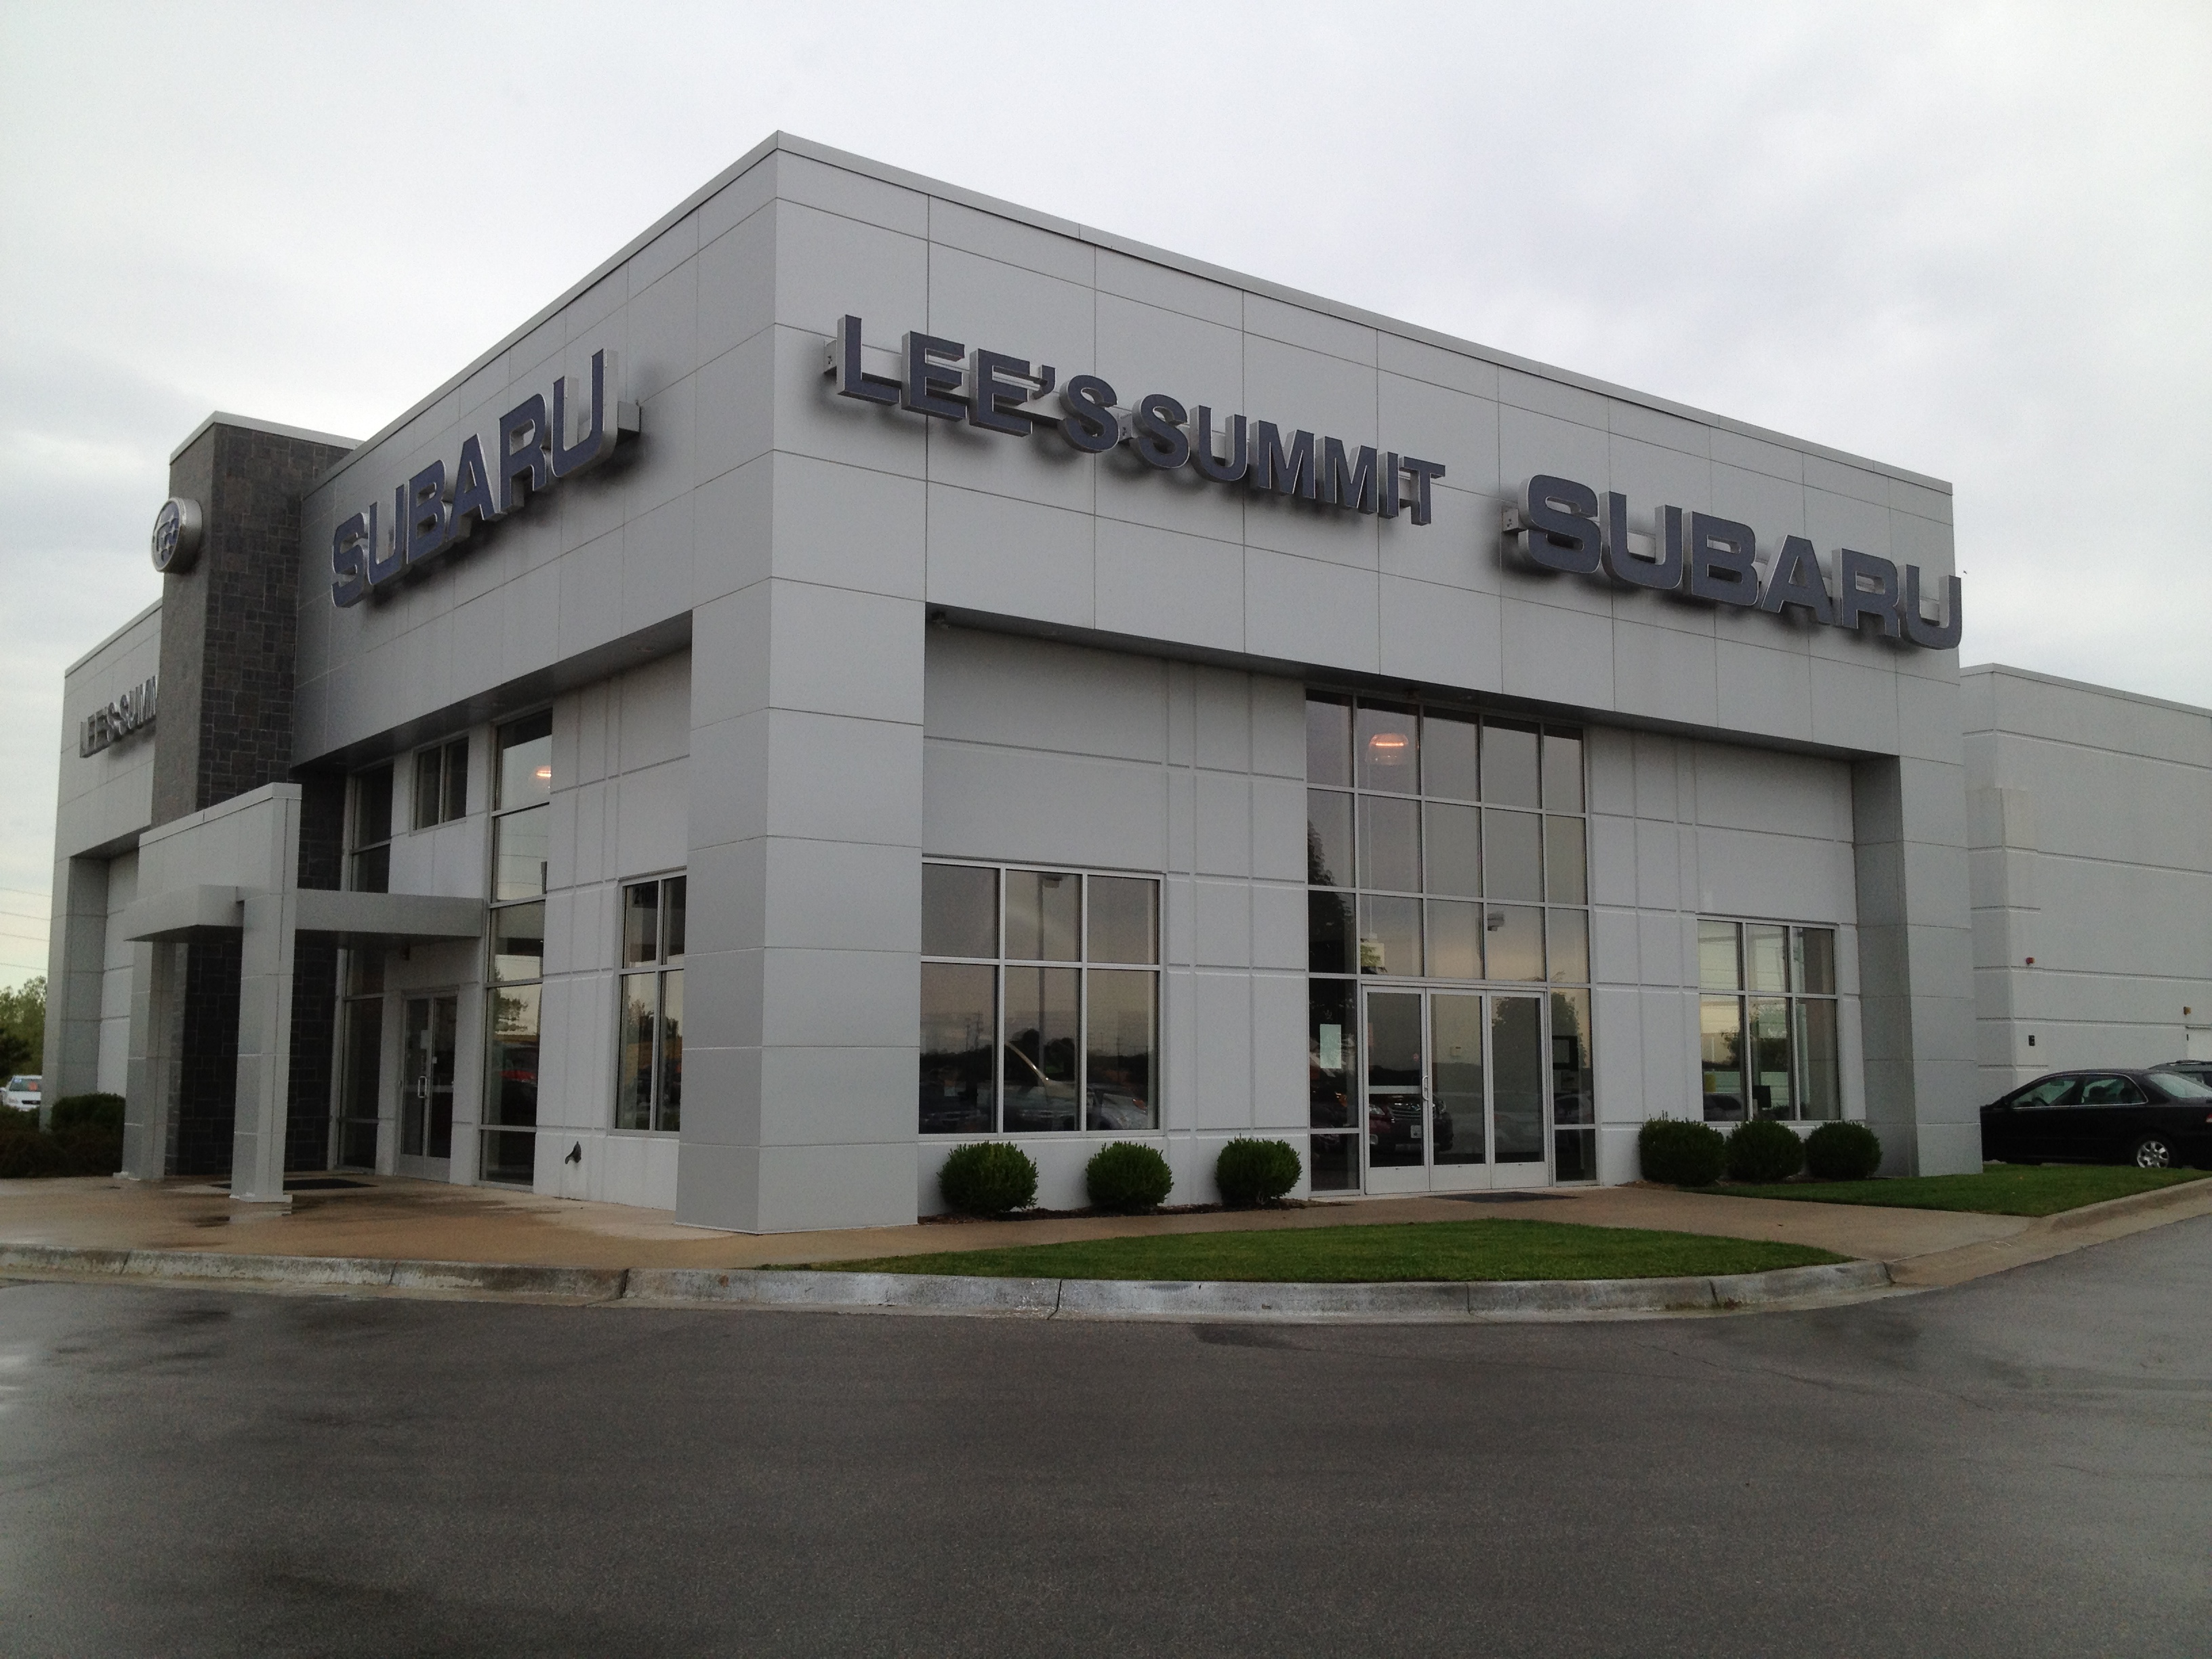 Lees Summit Subaru in Lees summit, MO | 133 Cars Available | Autotrader